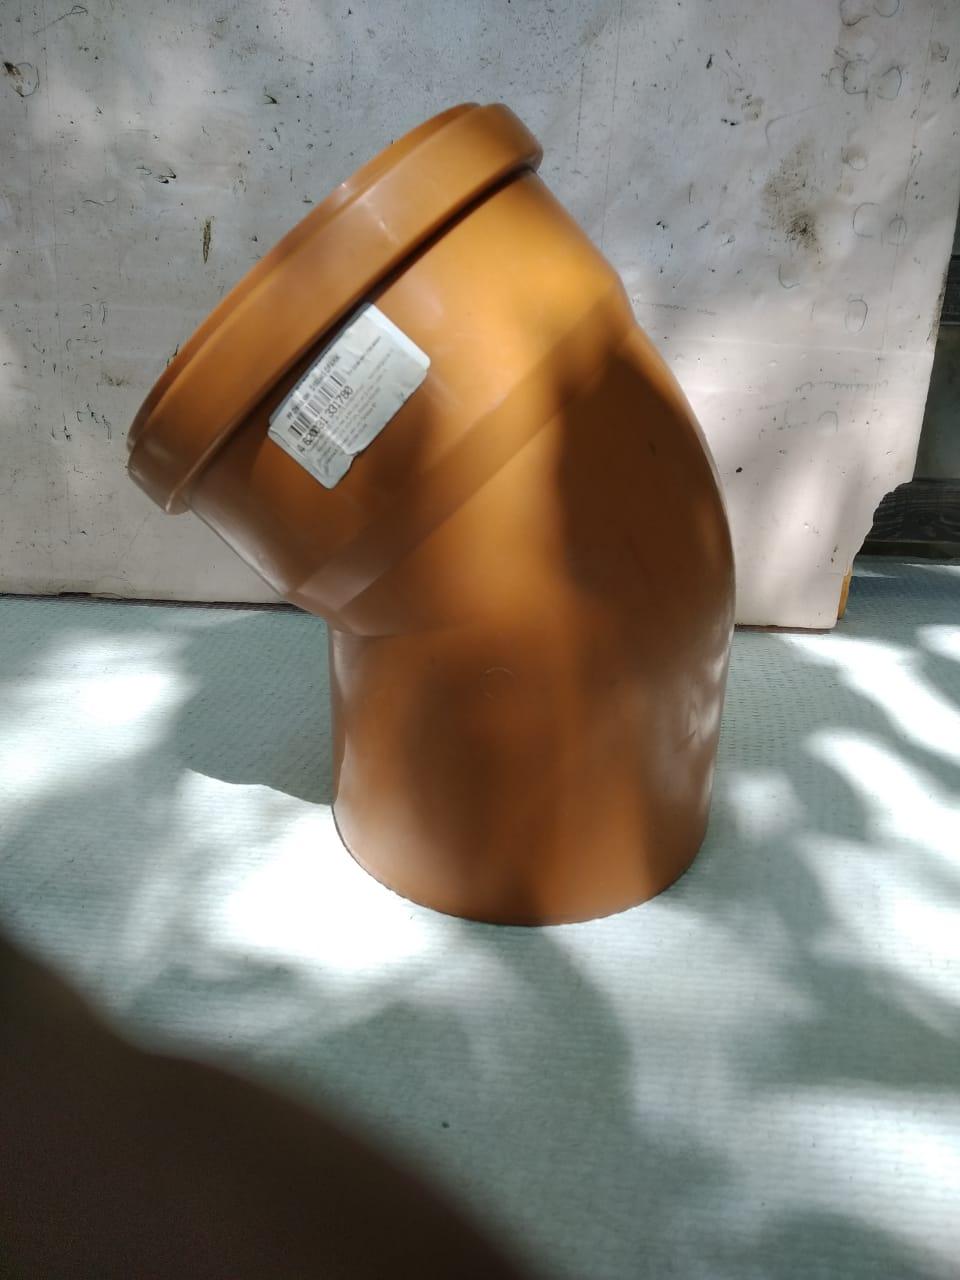 Отвод канализационный 110х15 оранжевый ПП